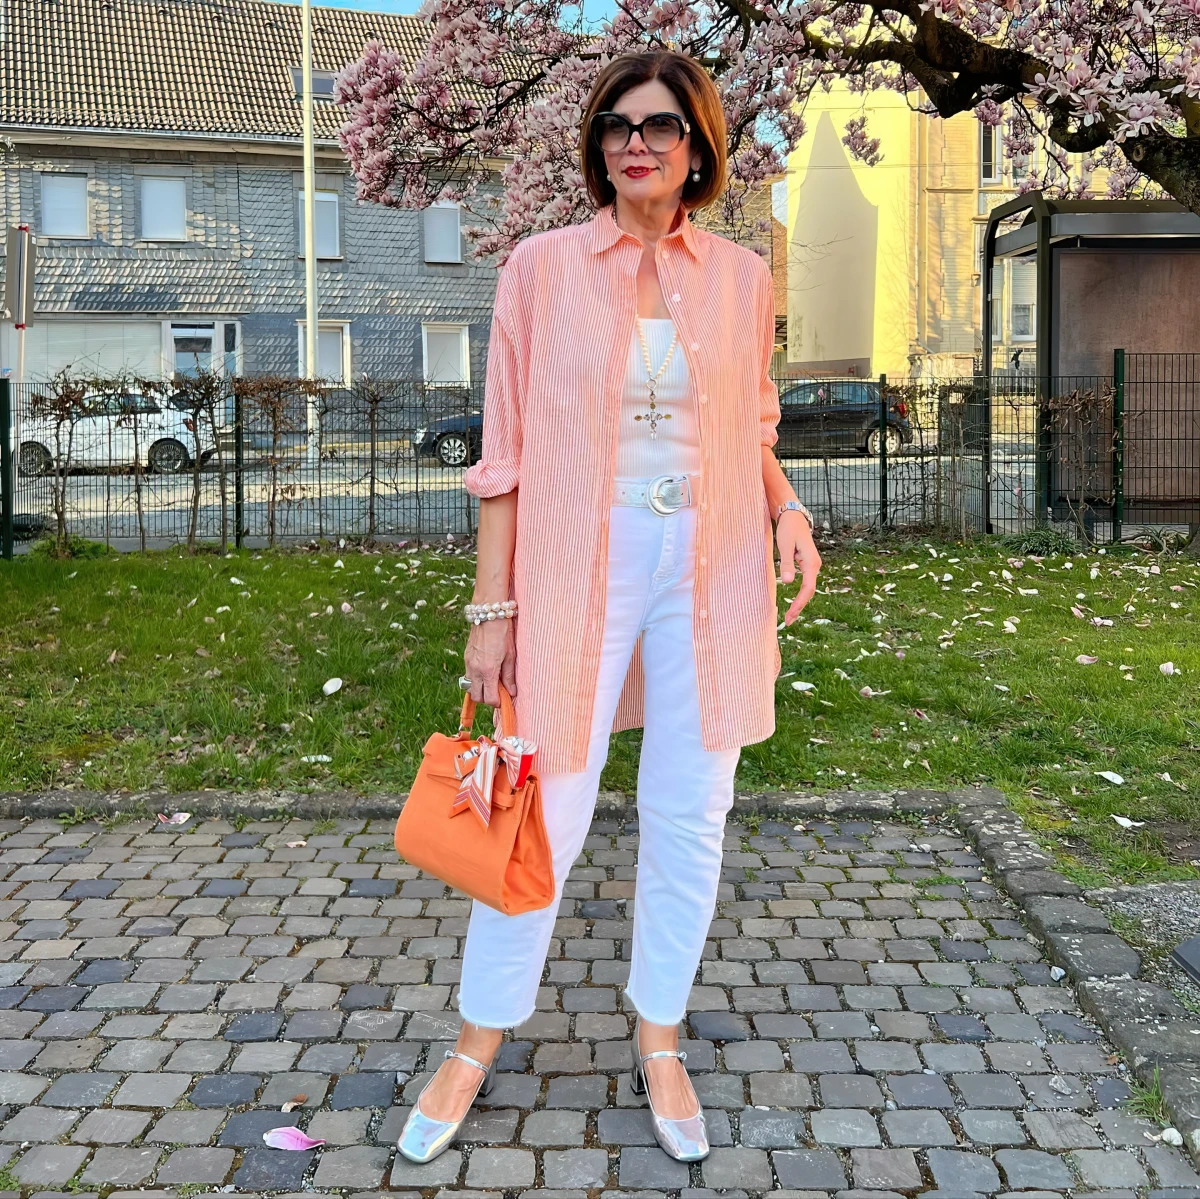 chemisier long orange jean blanc sac orange mode femme brune 60 ans